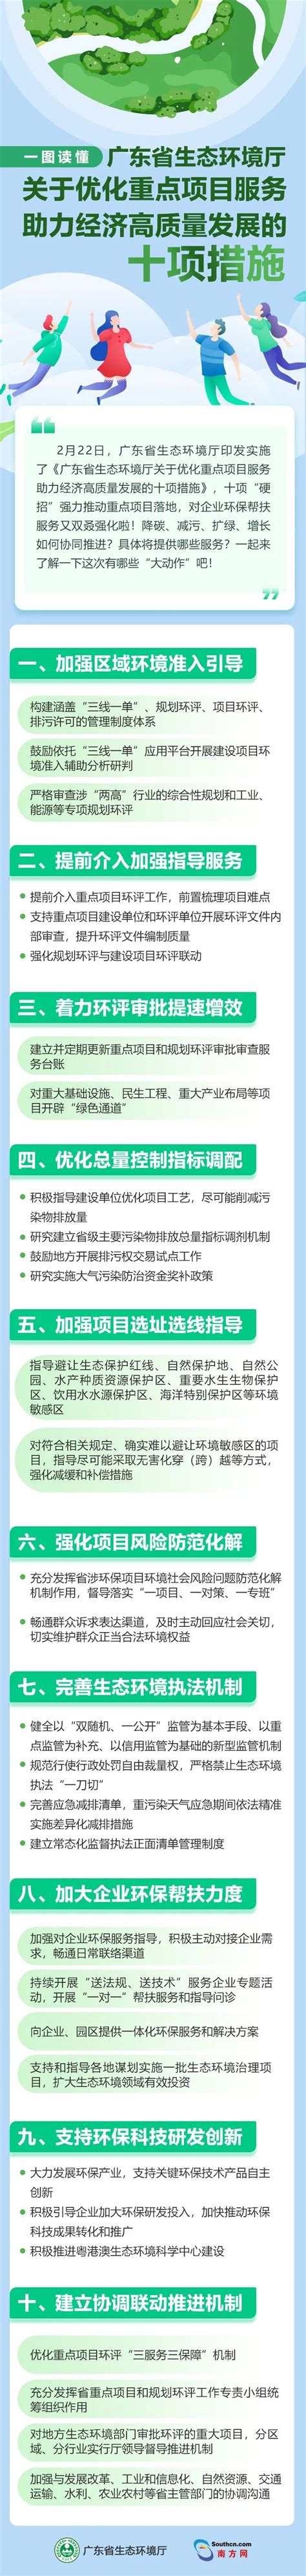 湛江优化营商环境 市场主体突破30万户_湛江市人民政府门户网站